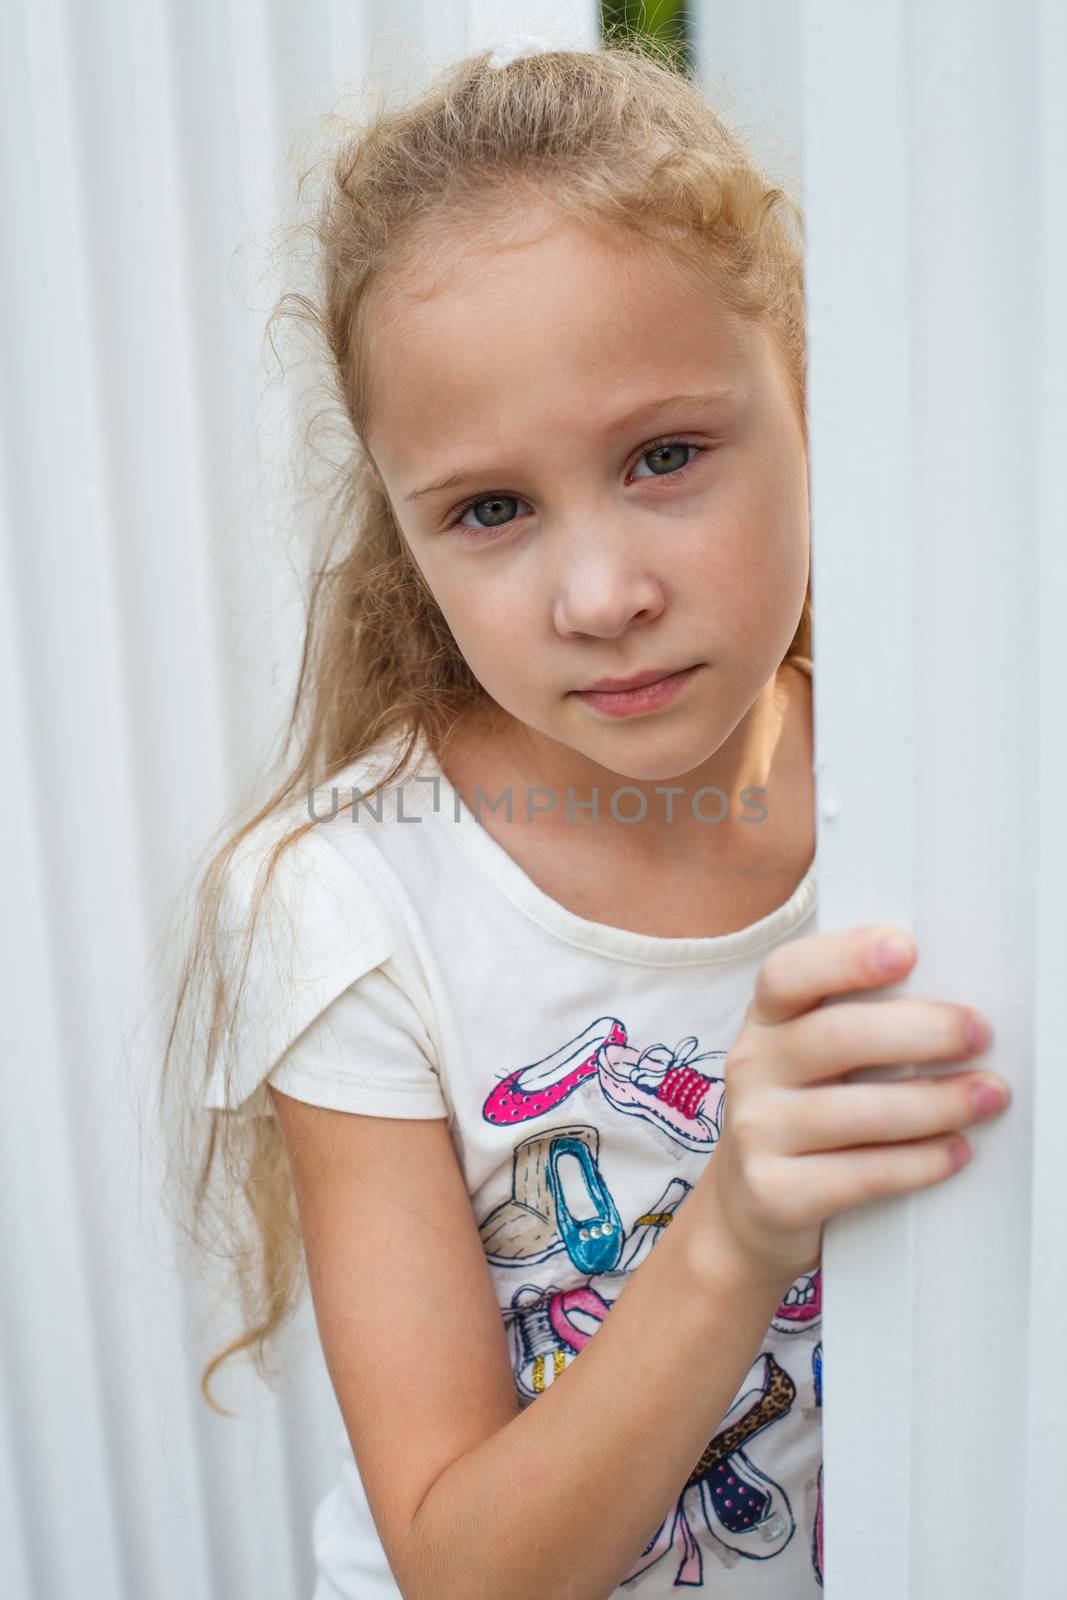 Sad little girl by altanaka